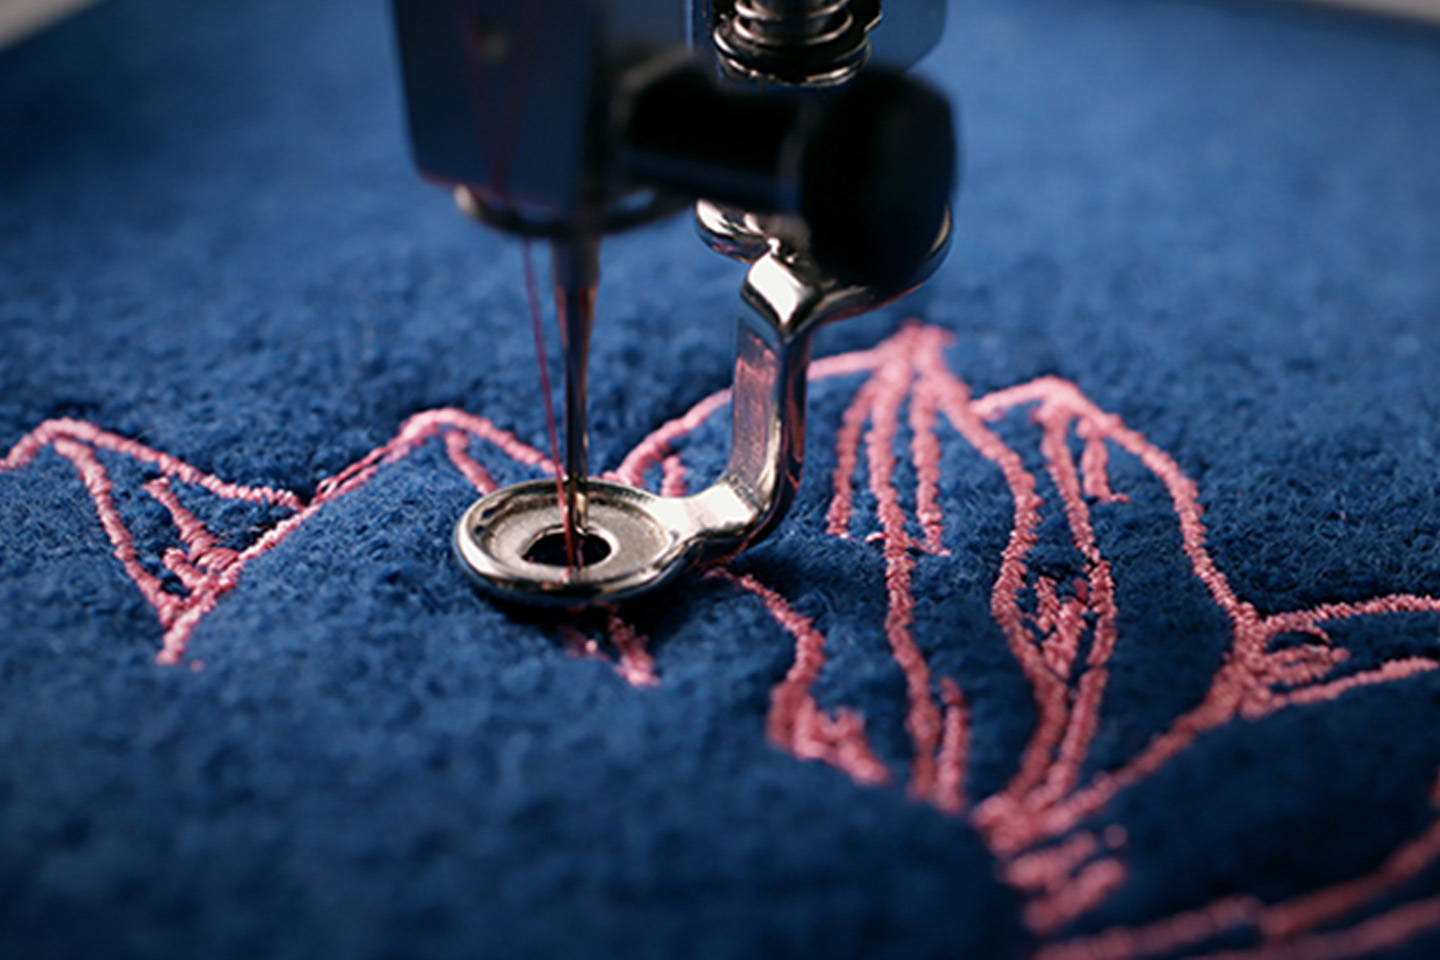 Marquage textile de vos vêtements professionnels - Vet Assur